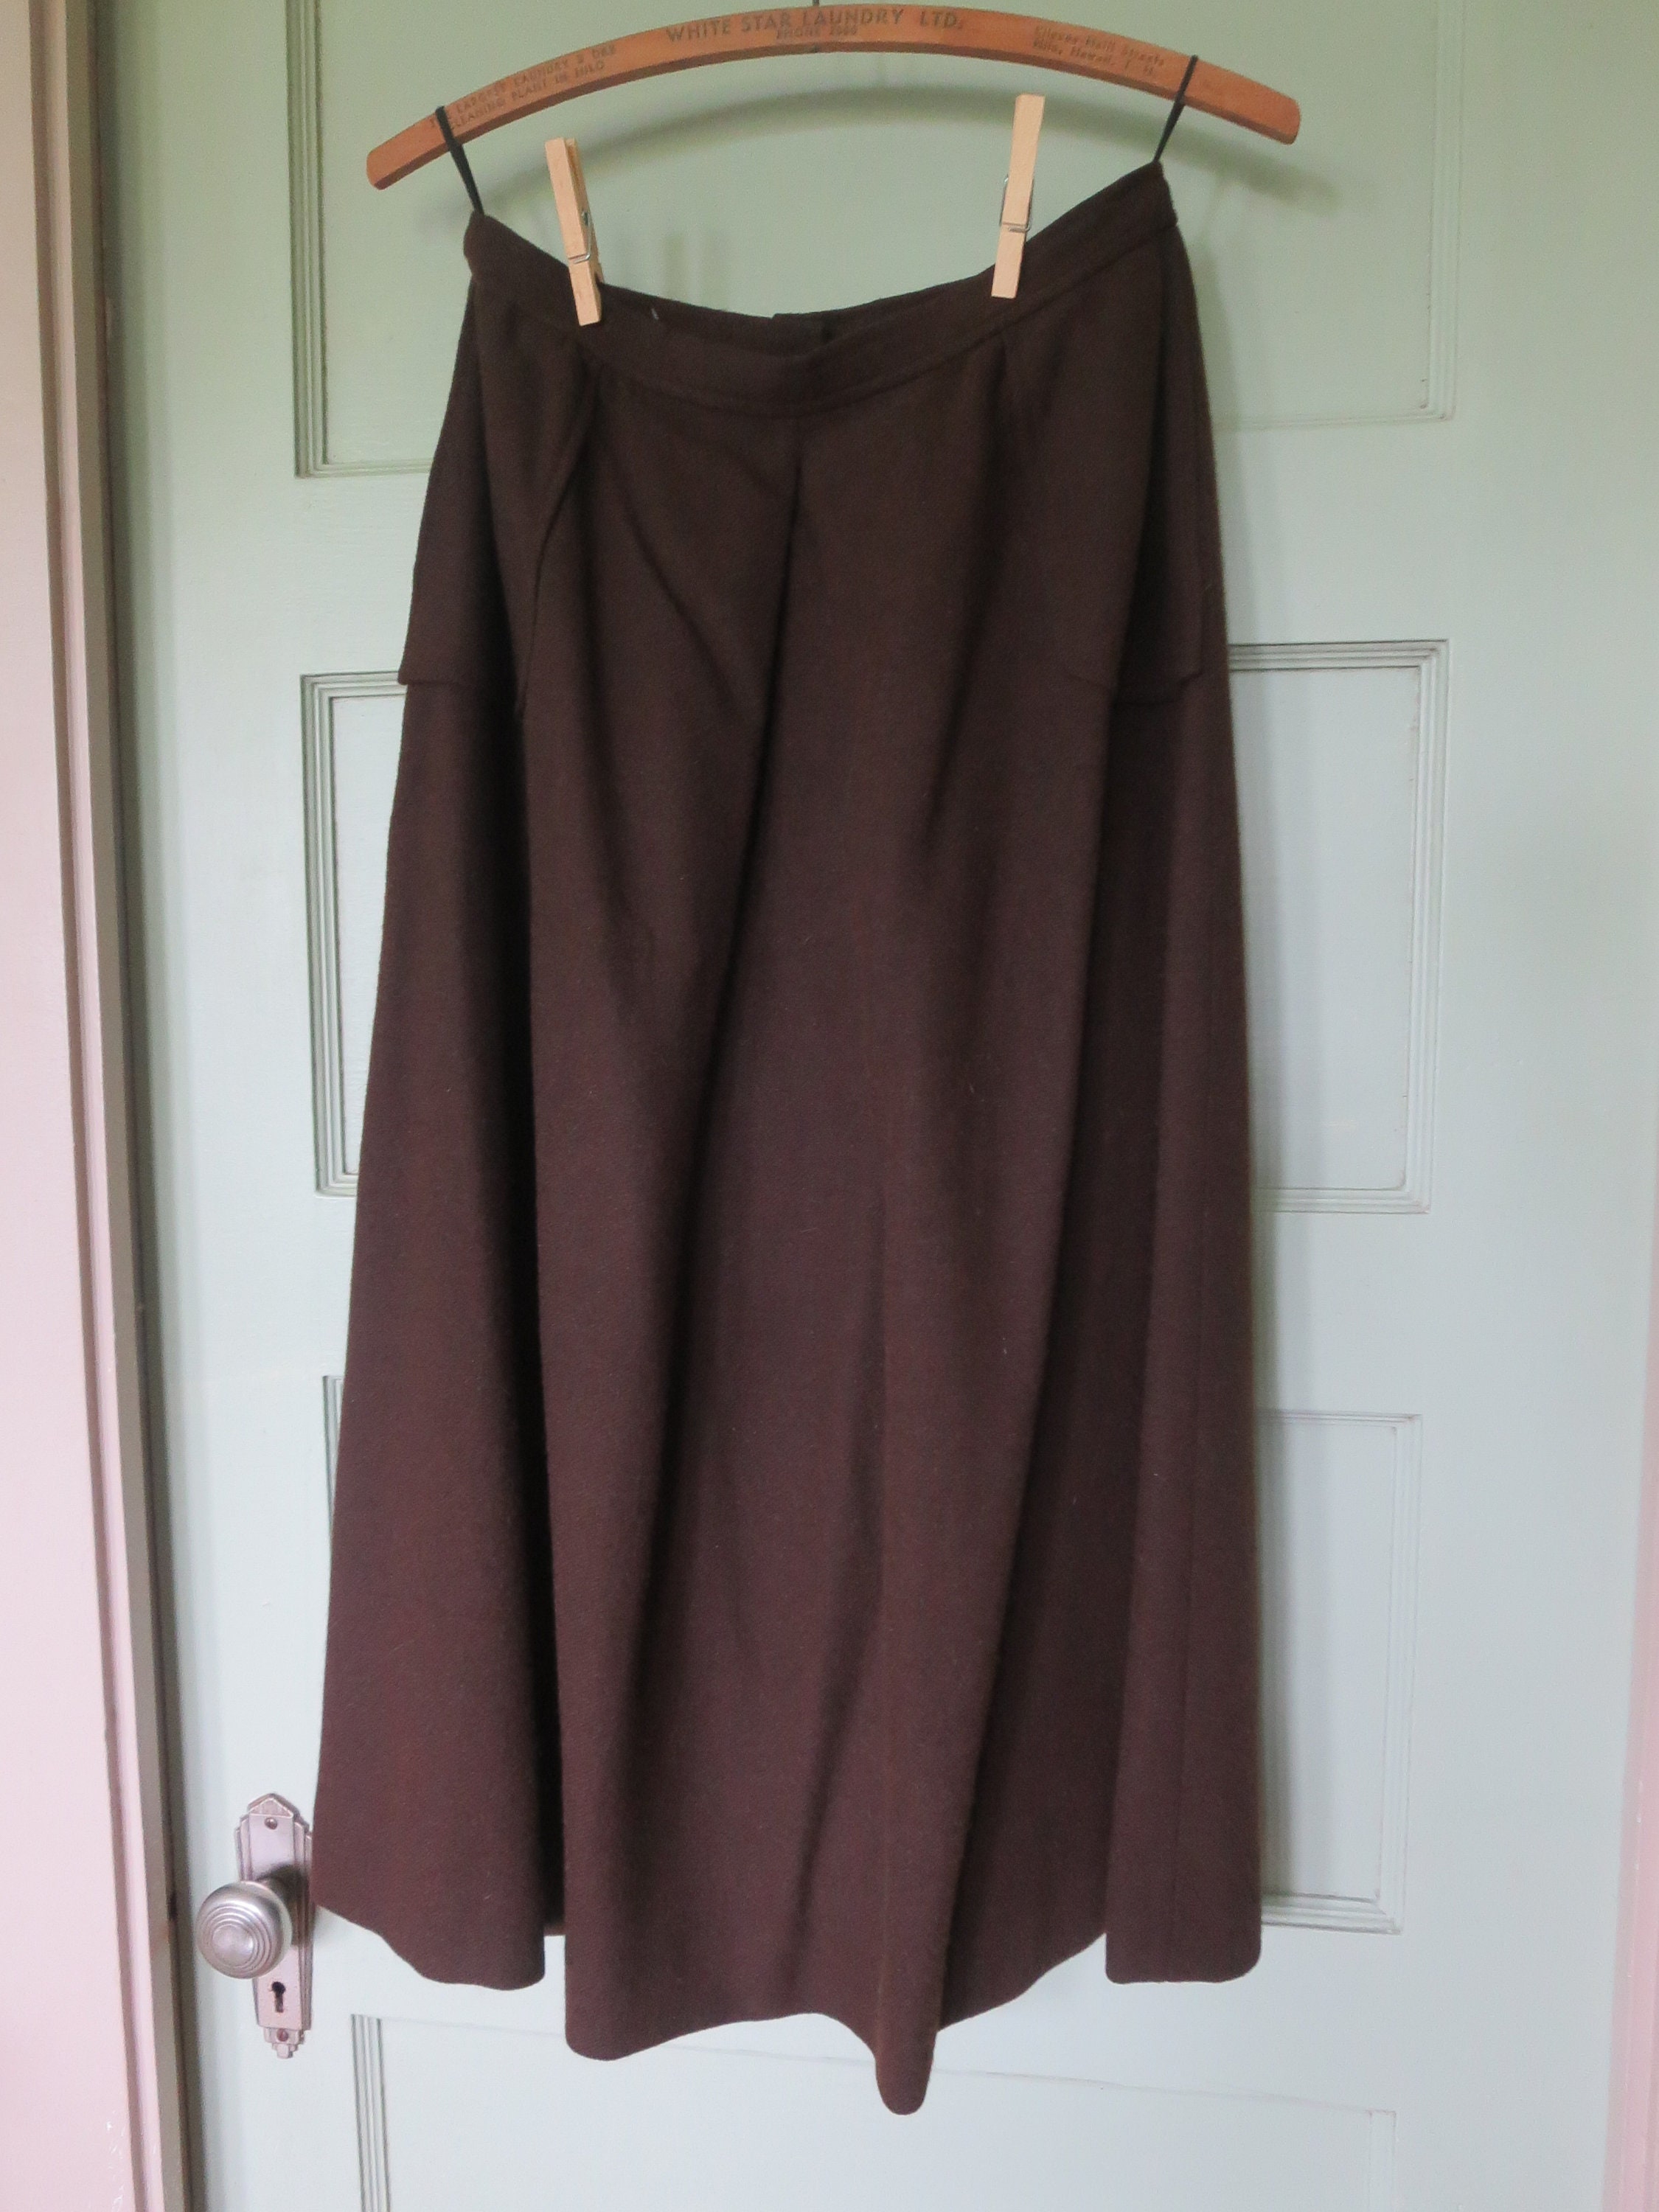 Vintage Brown Skirt, Wool Skirt, Brown Skirt, 40s Skirt, Skirt, Skirt ...